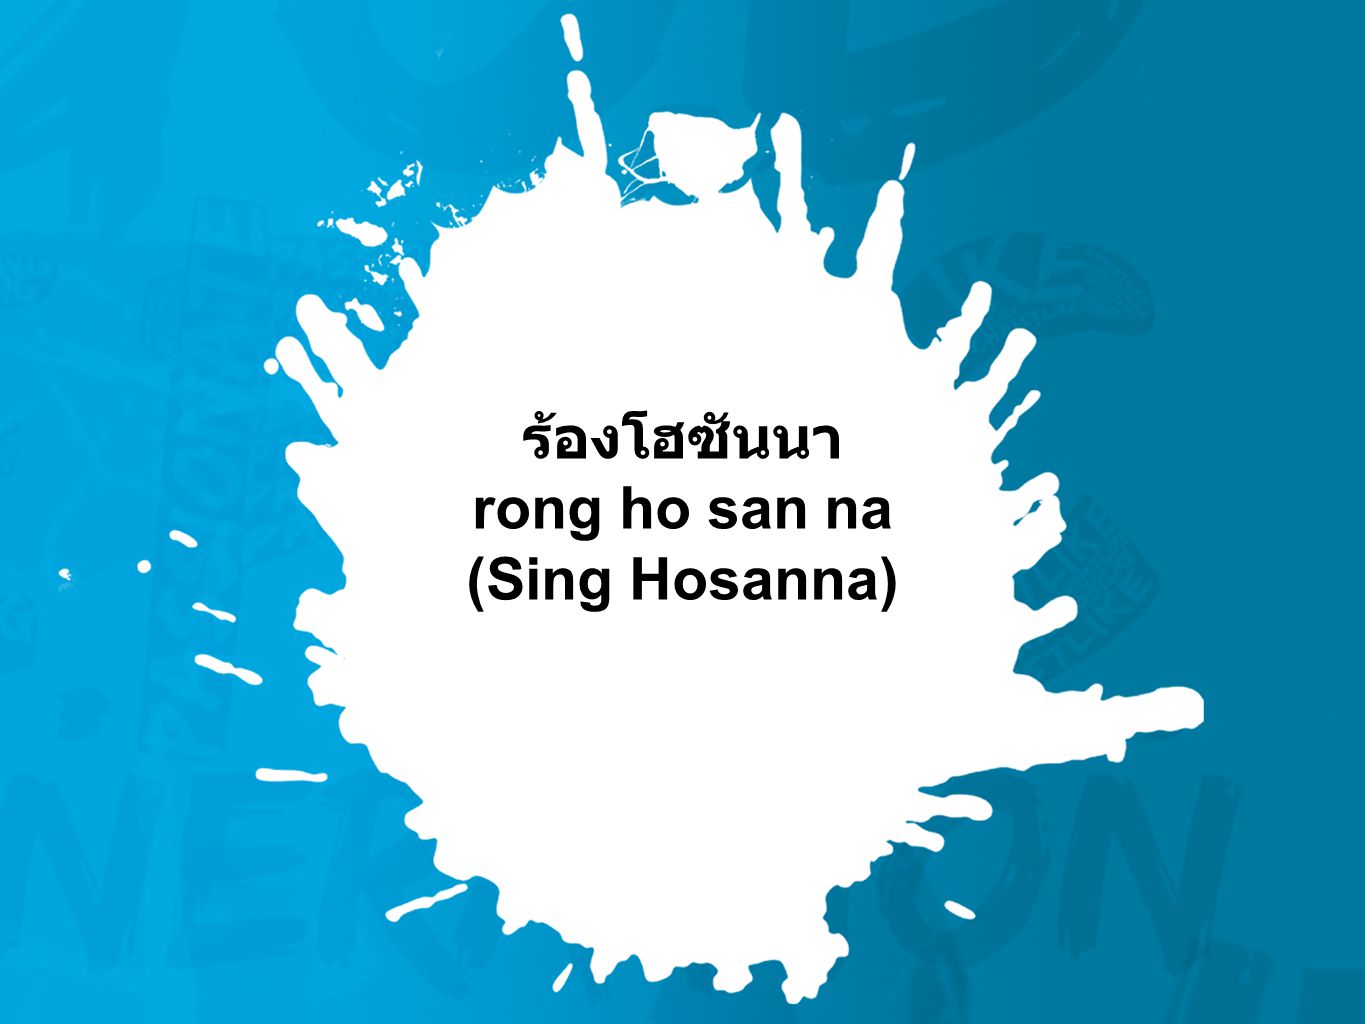 ร้องโฮซันนา rong ho san na (Sing Hosanna)